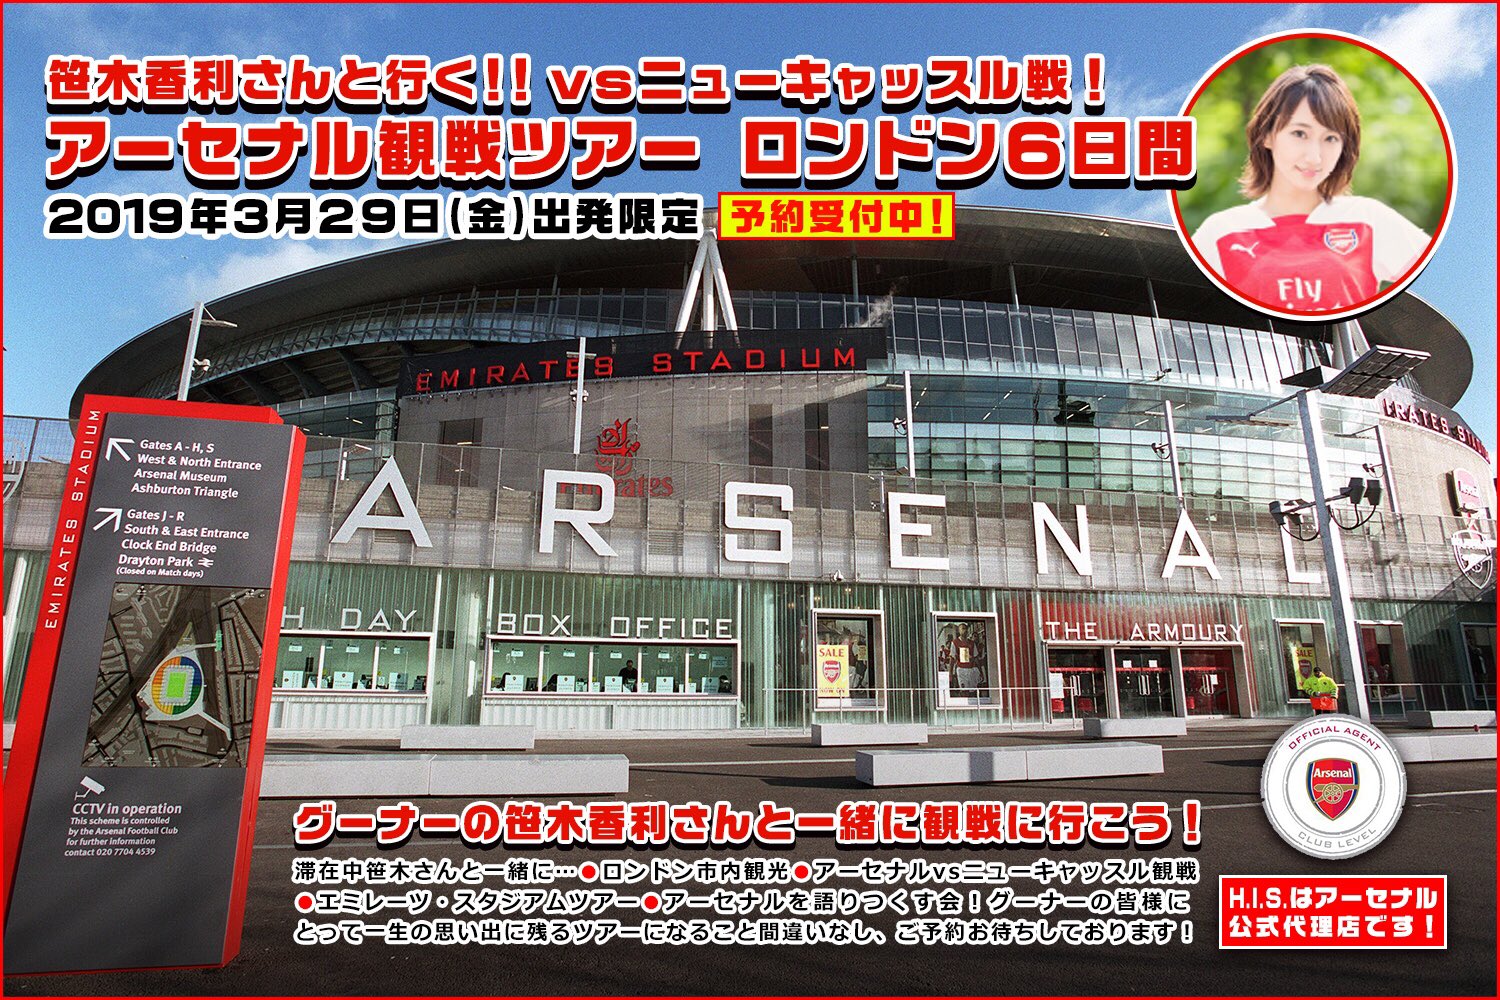 Sasagi Kaori’s Arsenal Match Tour: ‘Sasatabi